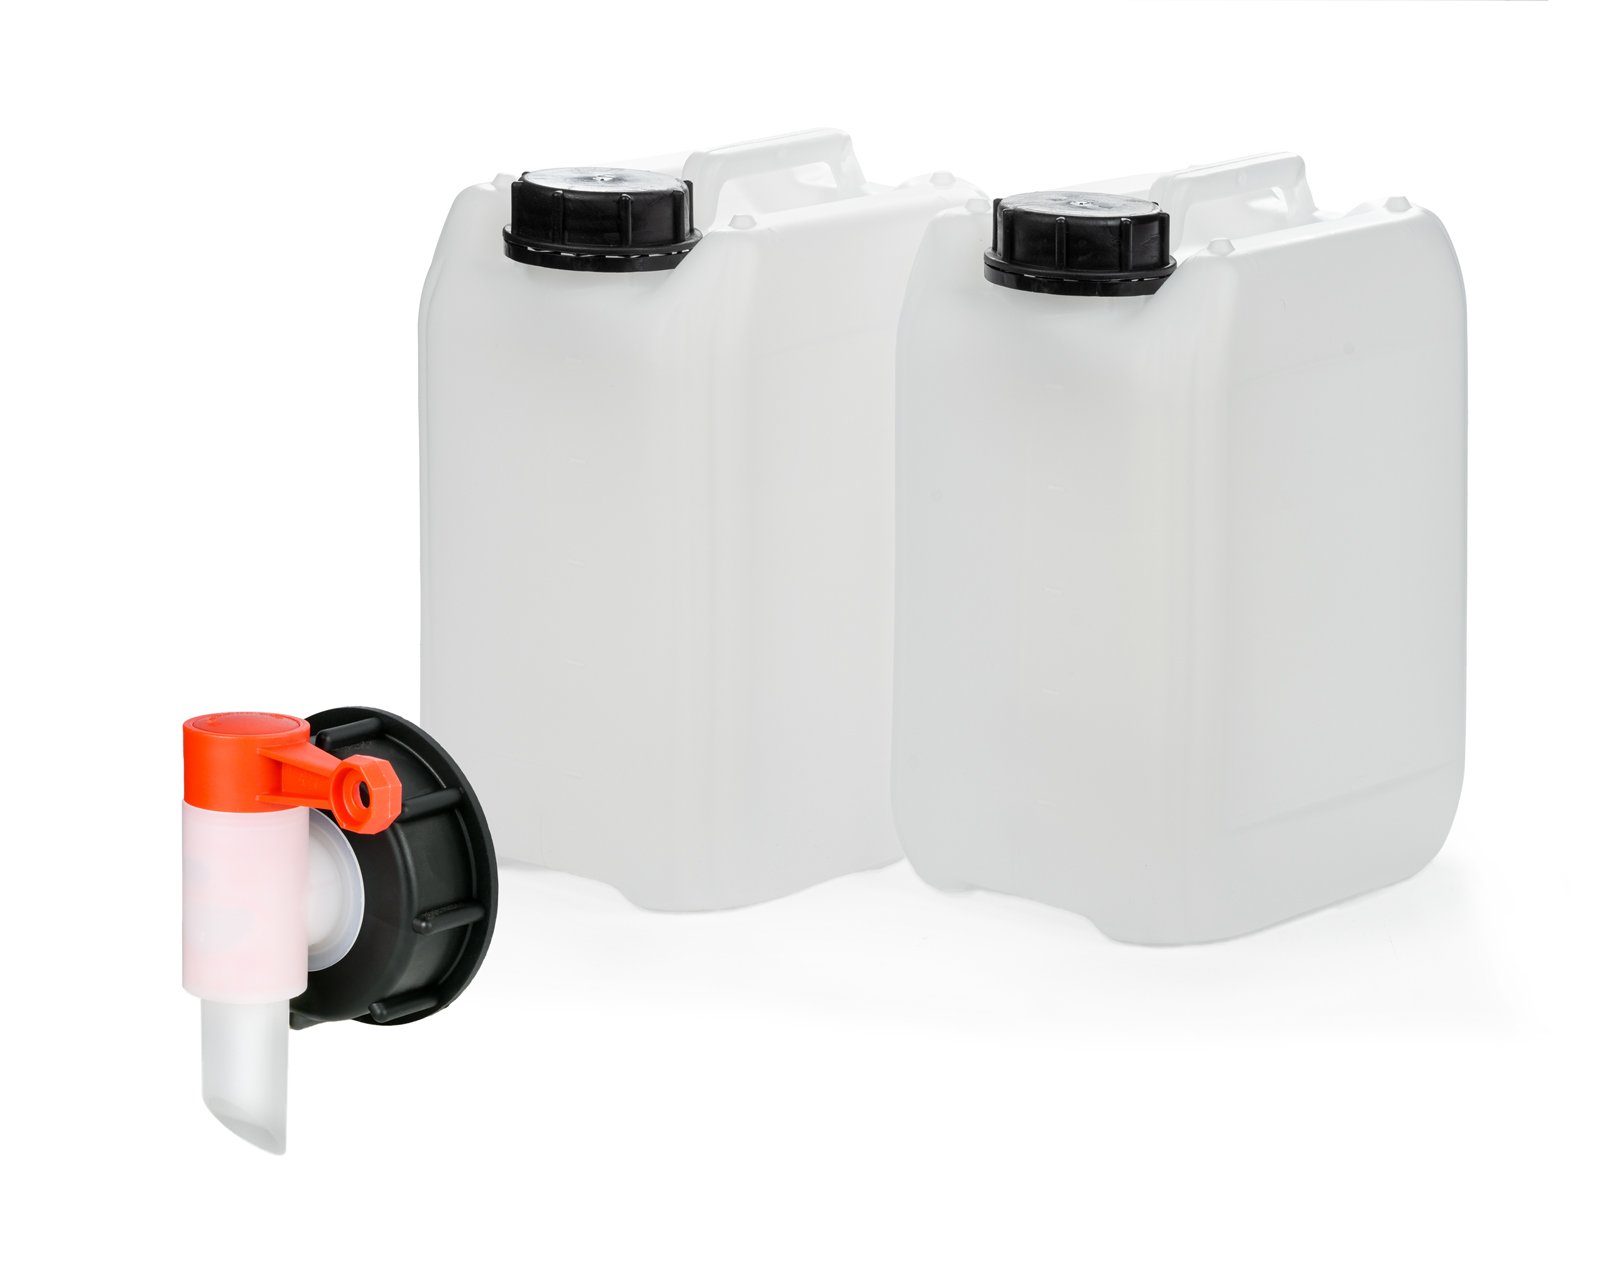 OCTOPUS Kanister 2x 5L Kanister leer mit Zapfhahn 51mm Gewinde, Wasserbehälter, HDPE, (2 St)